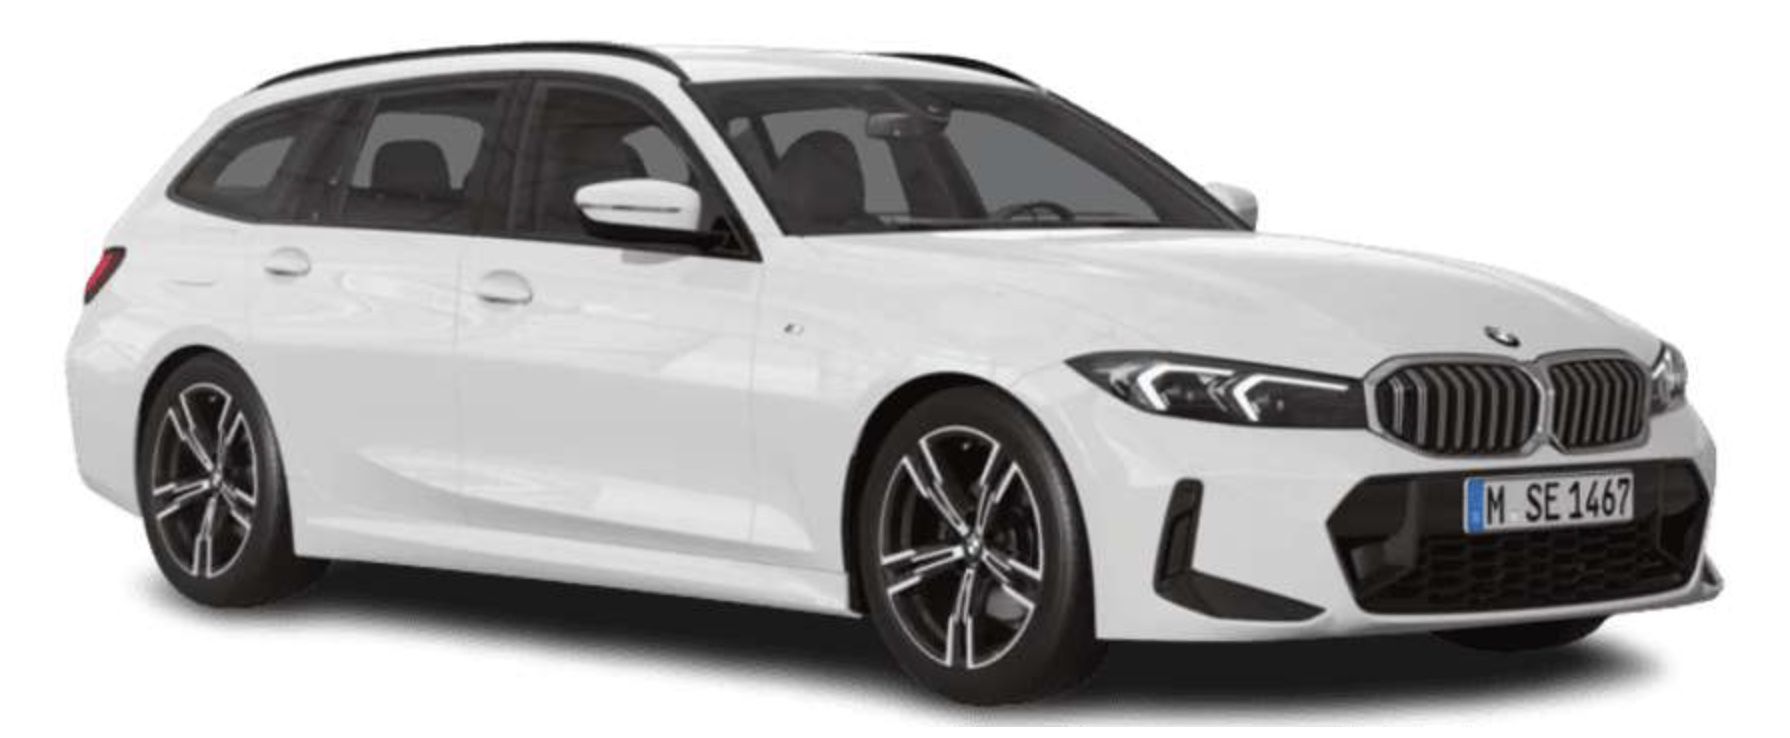 Privat: BMW 320i Touring mit 184 PS für 334€ mtl.   LF: 0.61